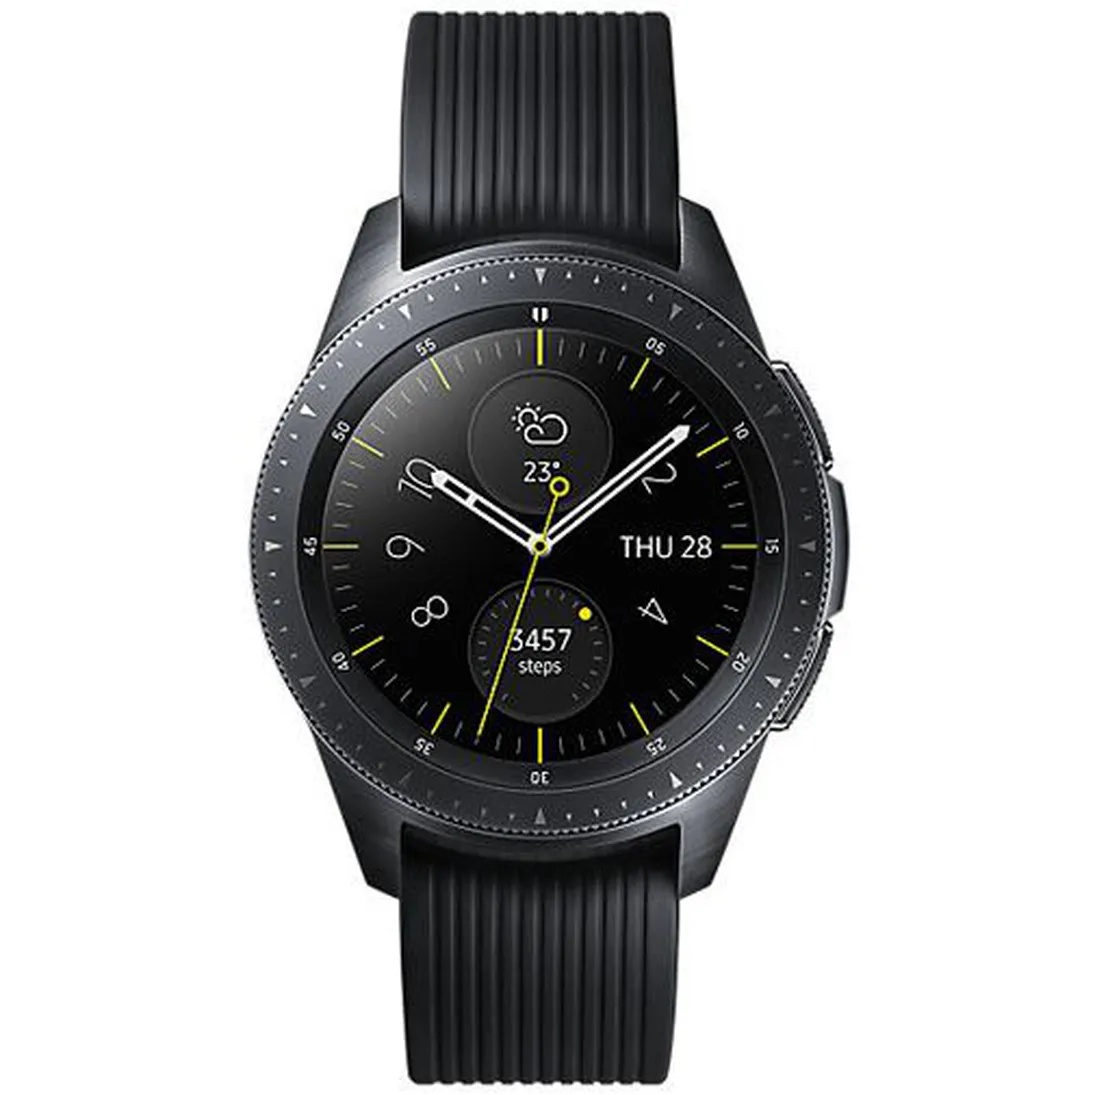 SM-R800 Galaxy Watch 46mm (WiFi Version)